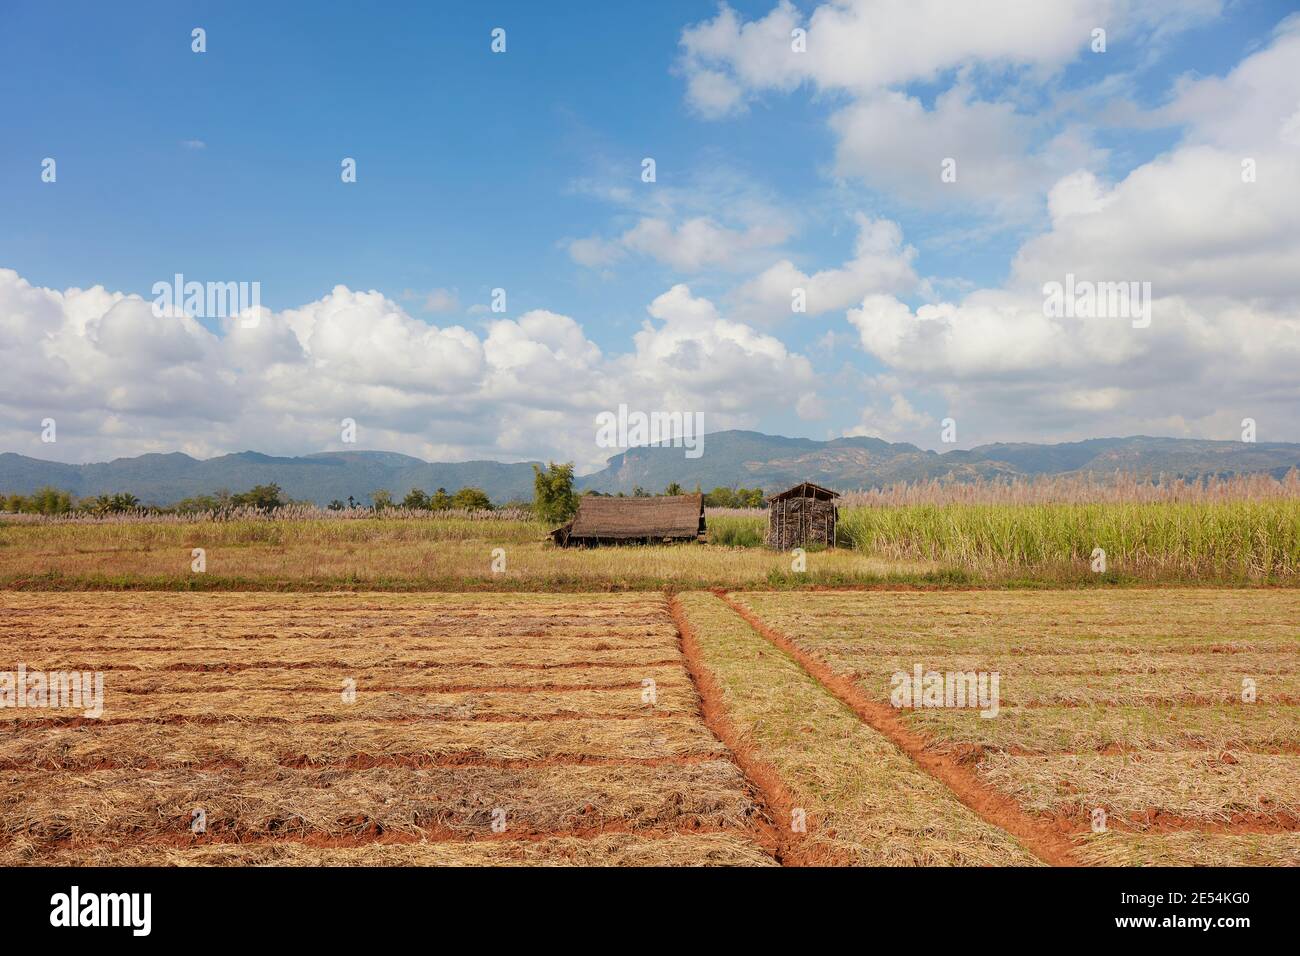 A sugarcane plantation near Inle Lake, Myanmar. Stock Photo